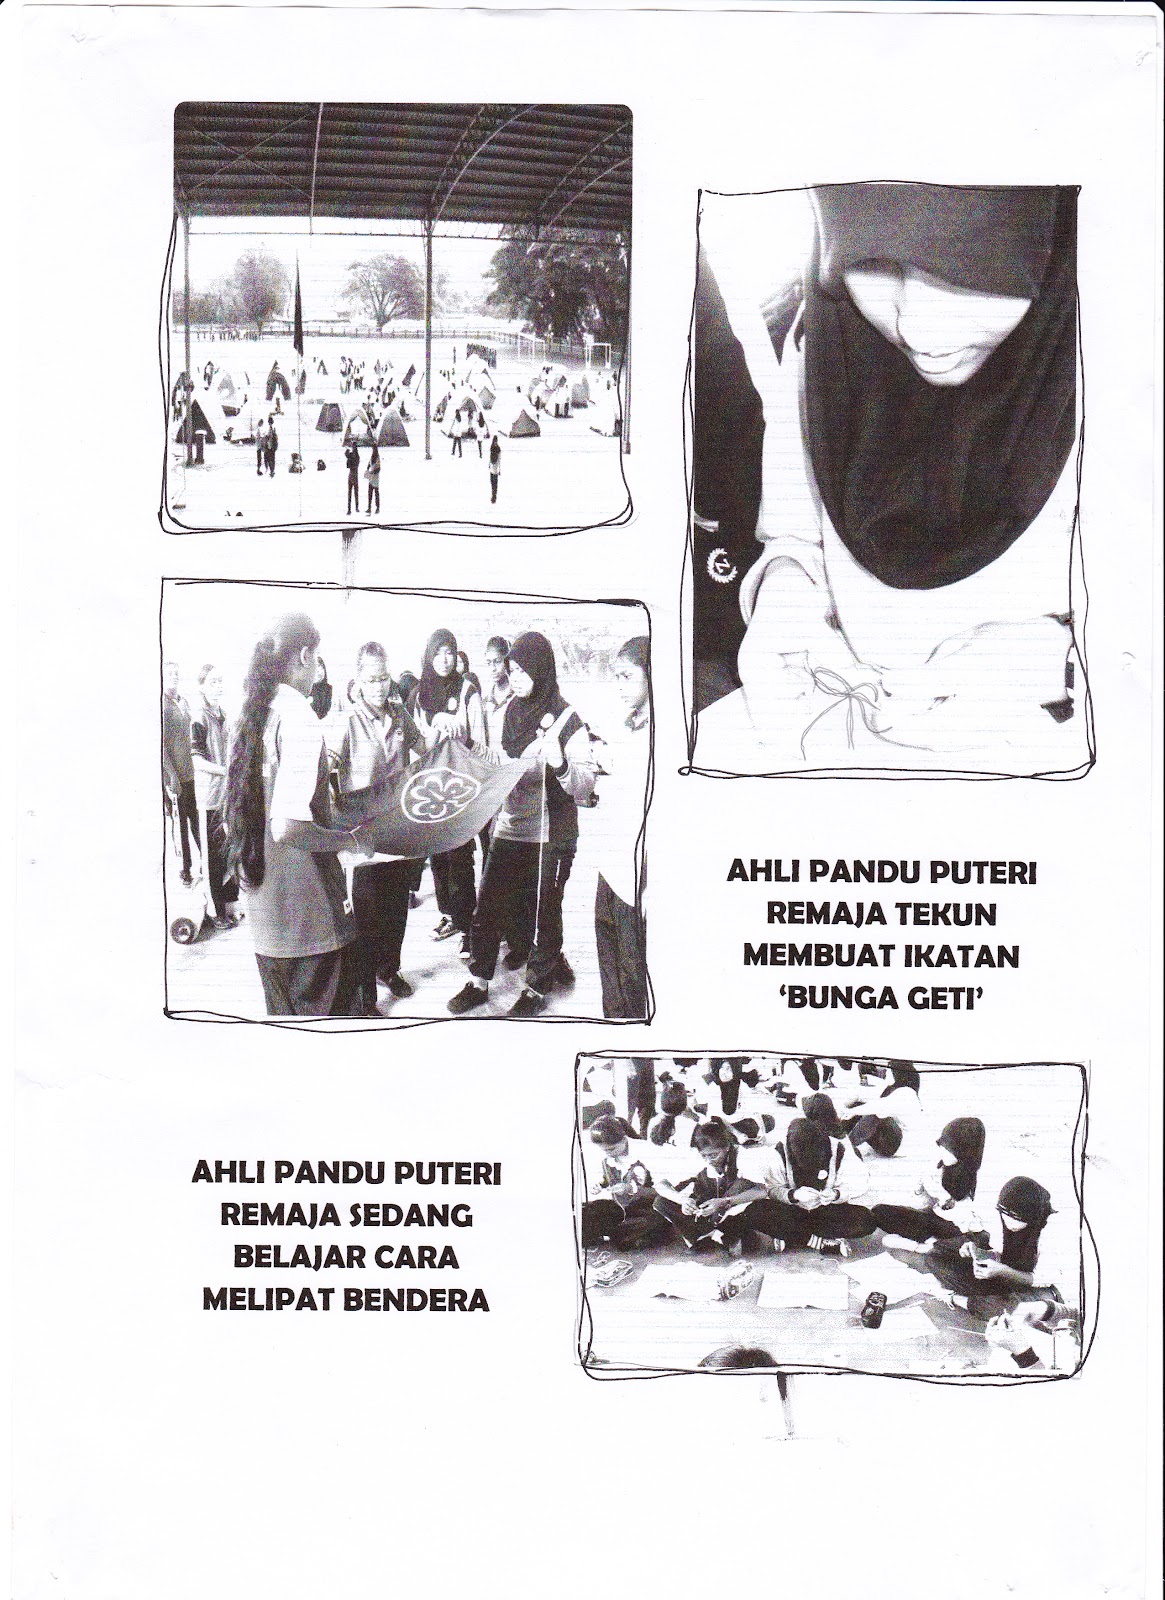 Persatuan Pandu Puteri Malaysia: LAGU DUNIA PANDU PUTERI